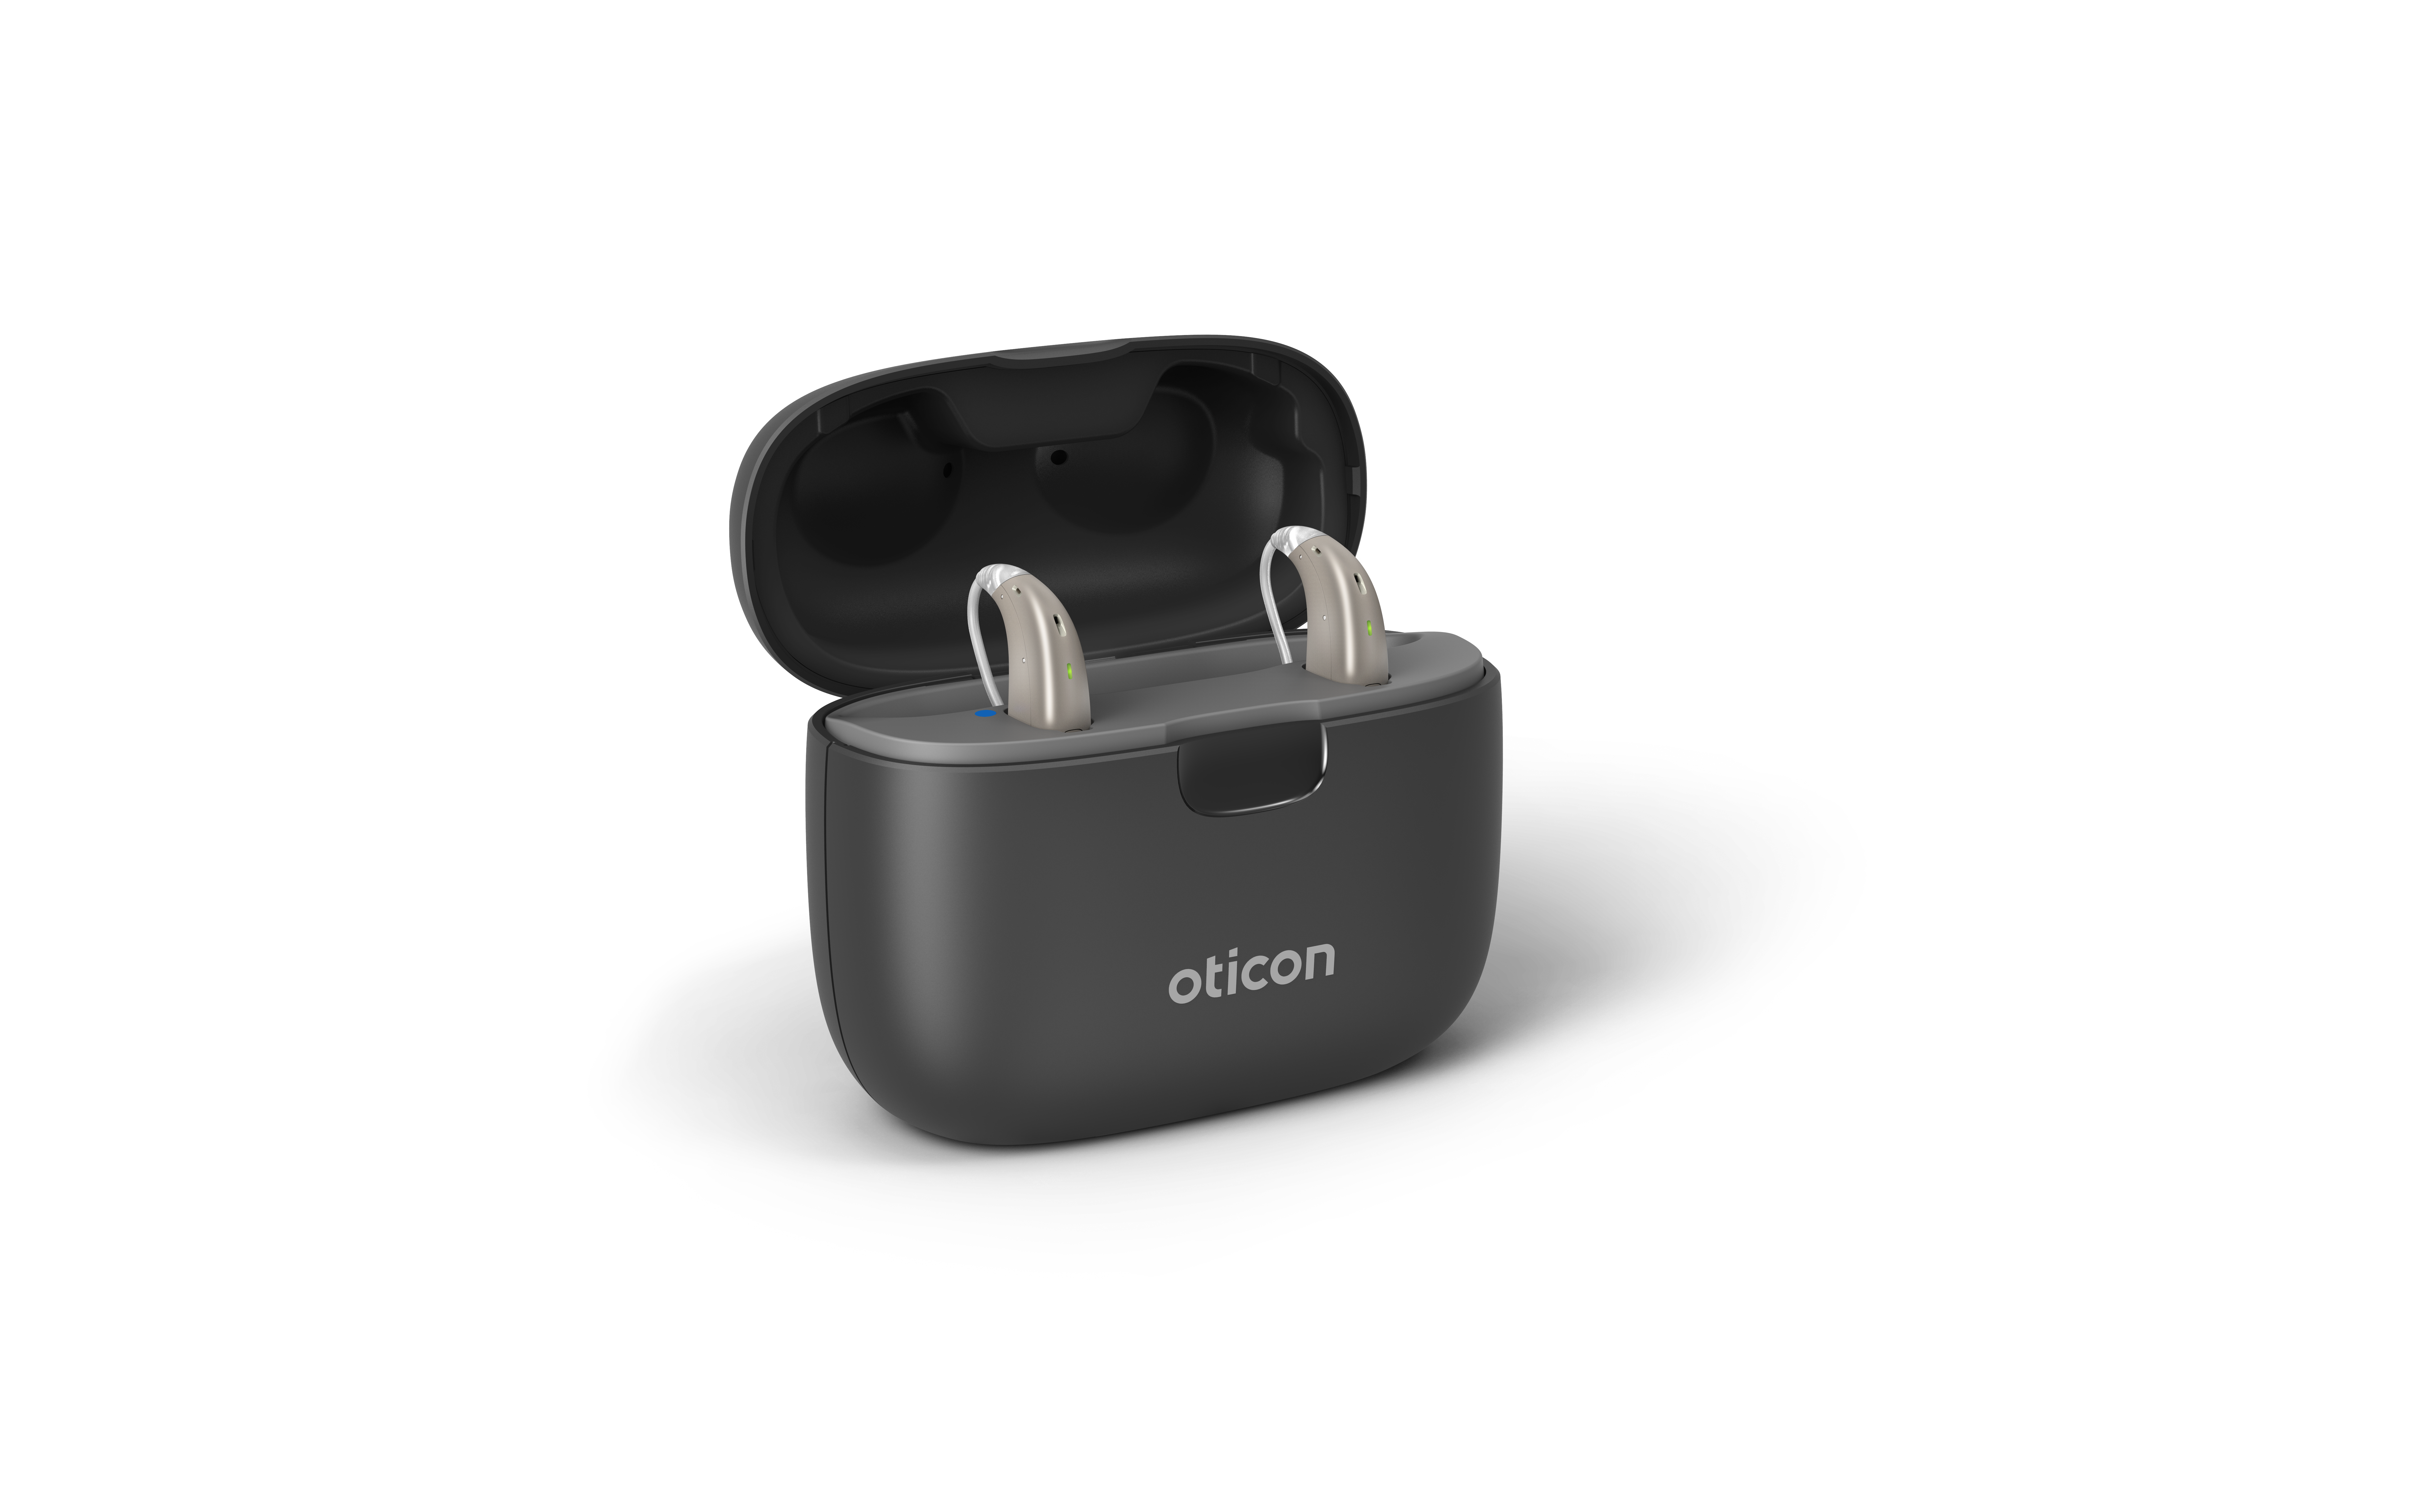 Cargador Audífonos SmartCharger mRite Oticon